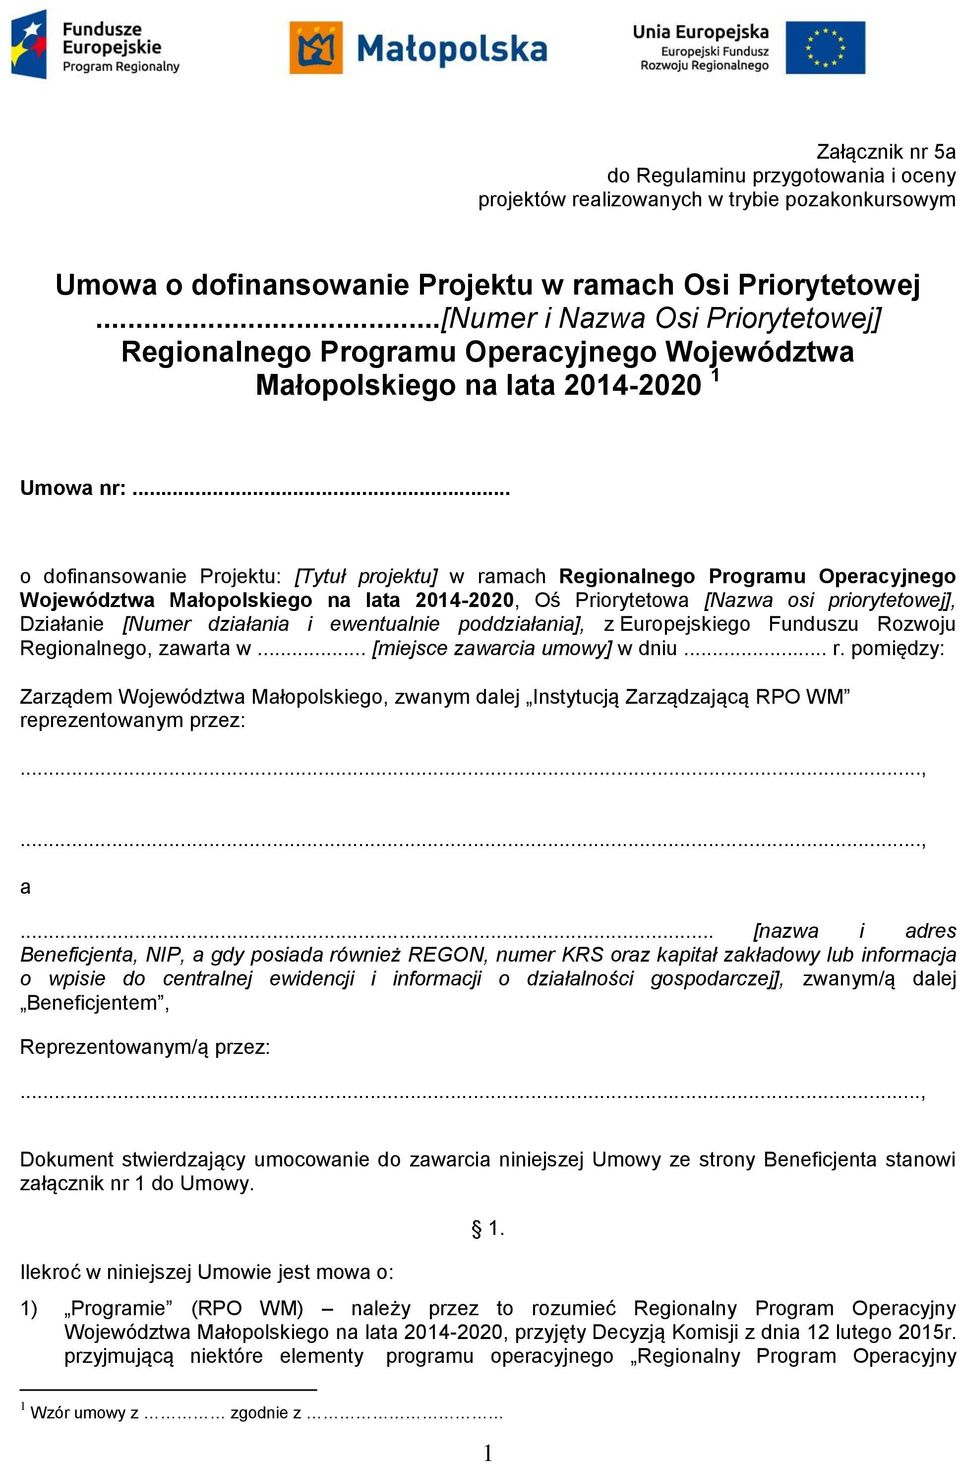 .. o dofinansowanie Projektu: [Tytuł projektu] w ramach Regionalnego Programu Operacyjnego Województwa Małopolskiego na lata 2014-2020, Oś Priorytetowa [Nazwa osi priorytetowej], Działanie [Numer